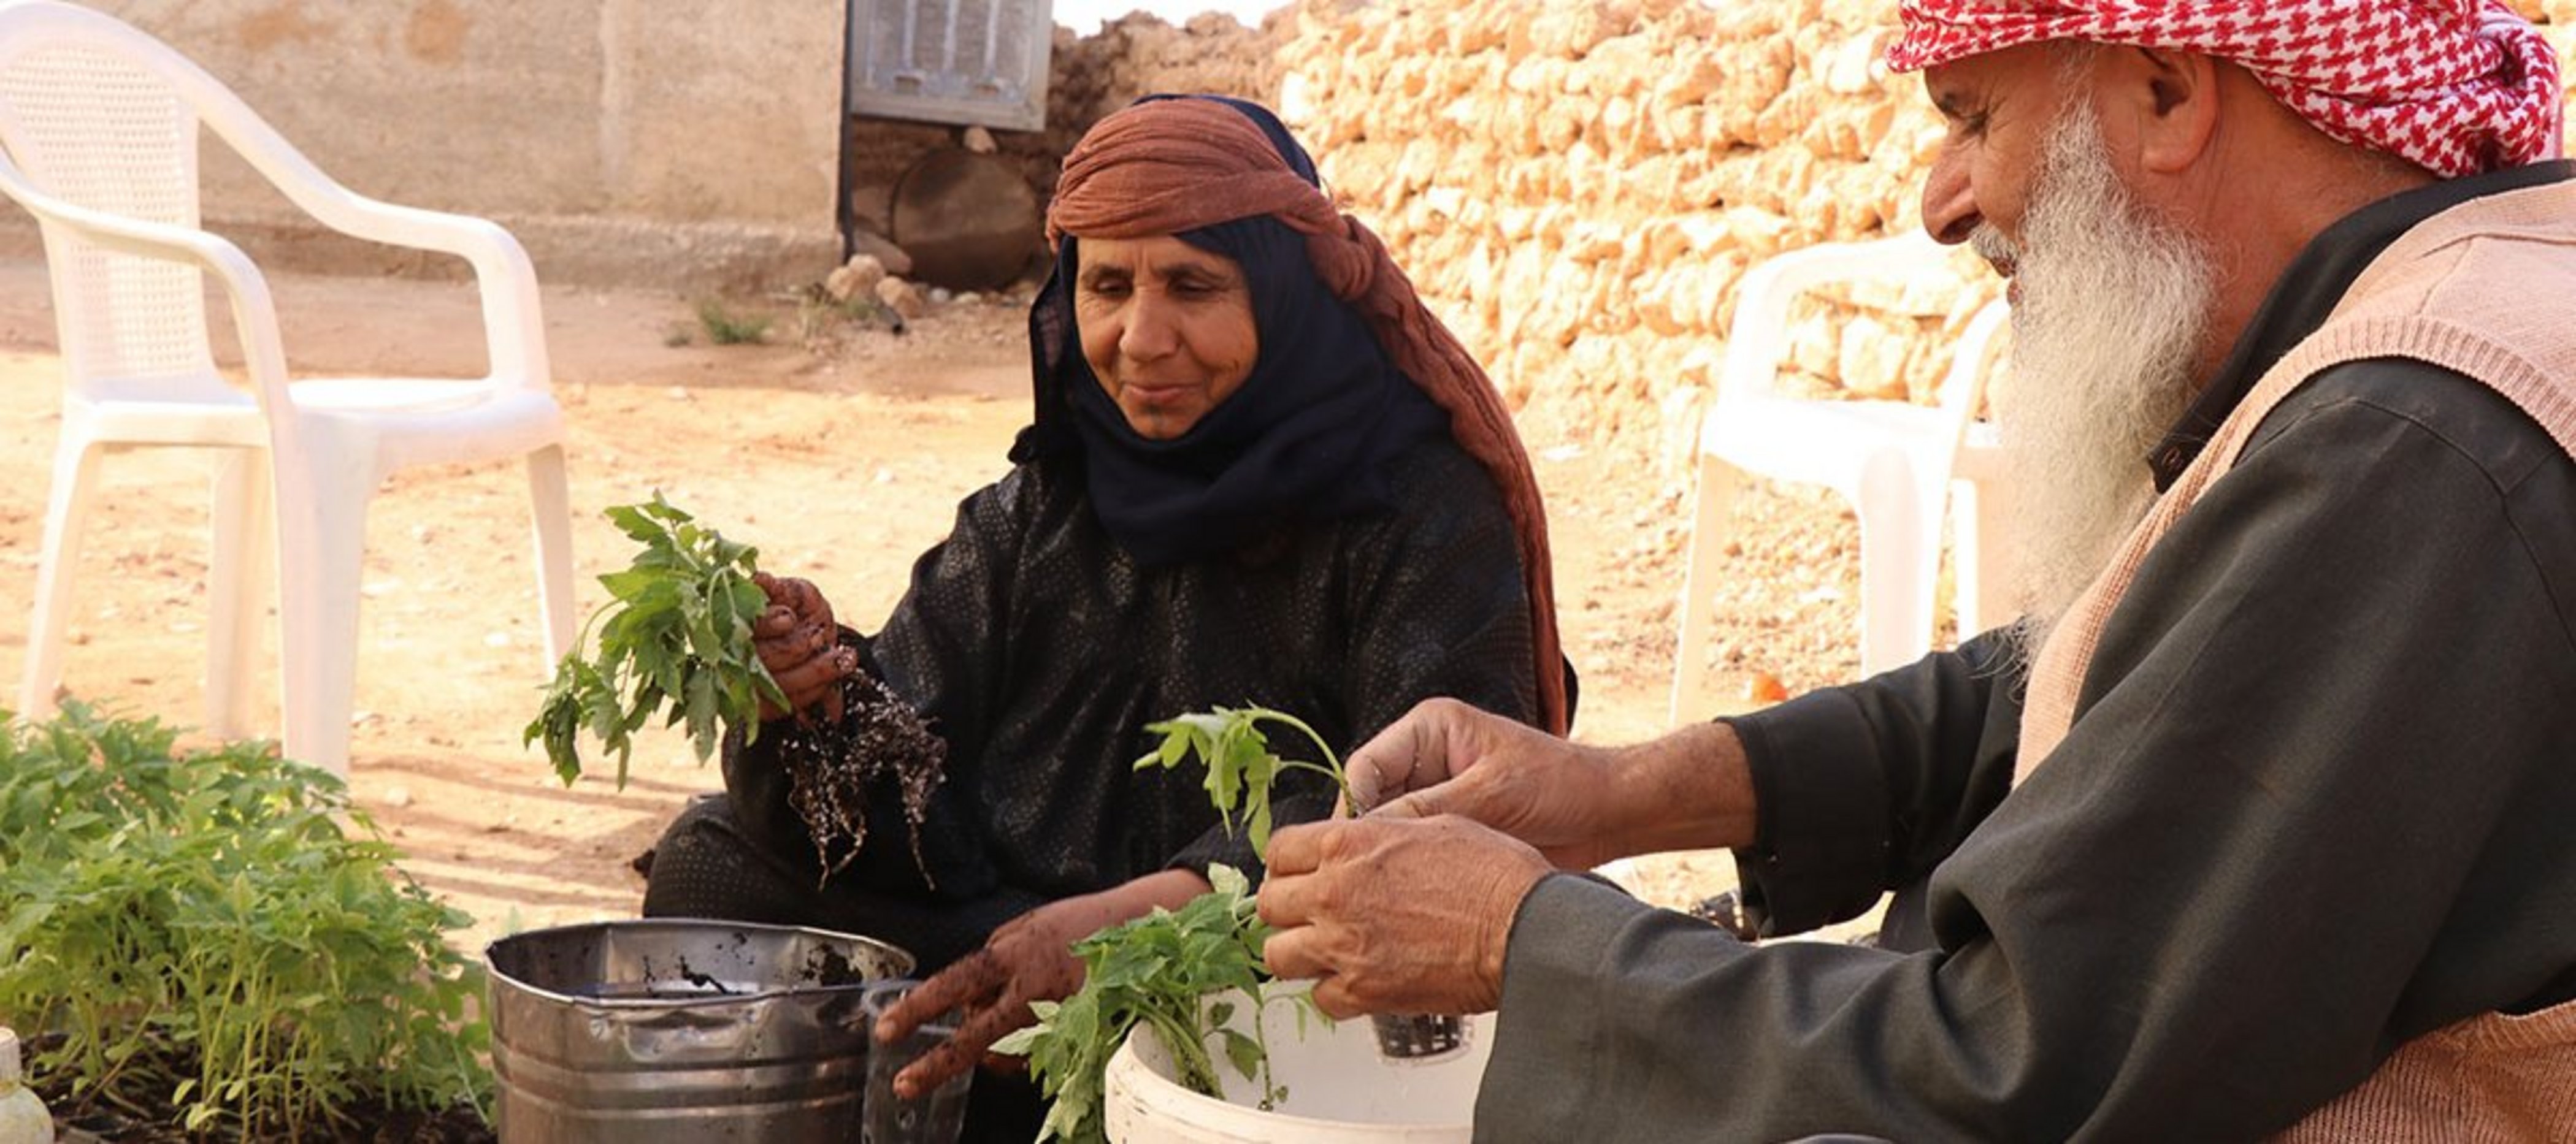 Ein älteres Paar in Syrien bereitet junge Pflanzen für die Installation in einer Hydroponik-Anlage vor